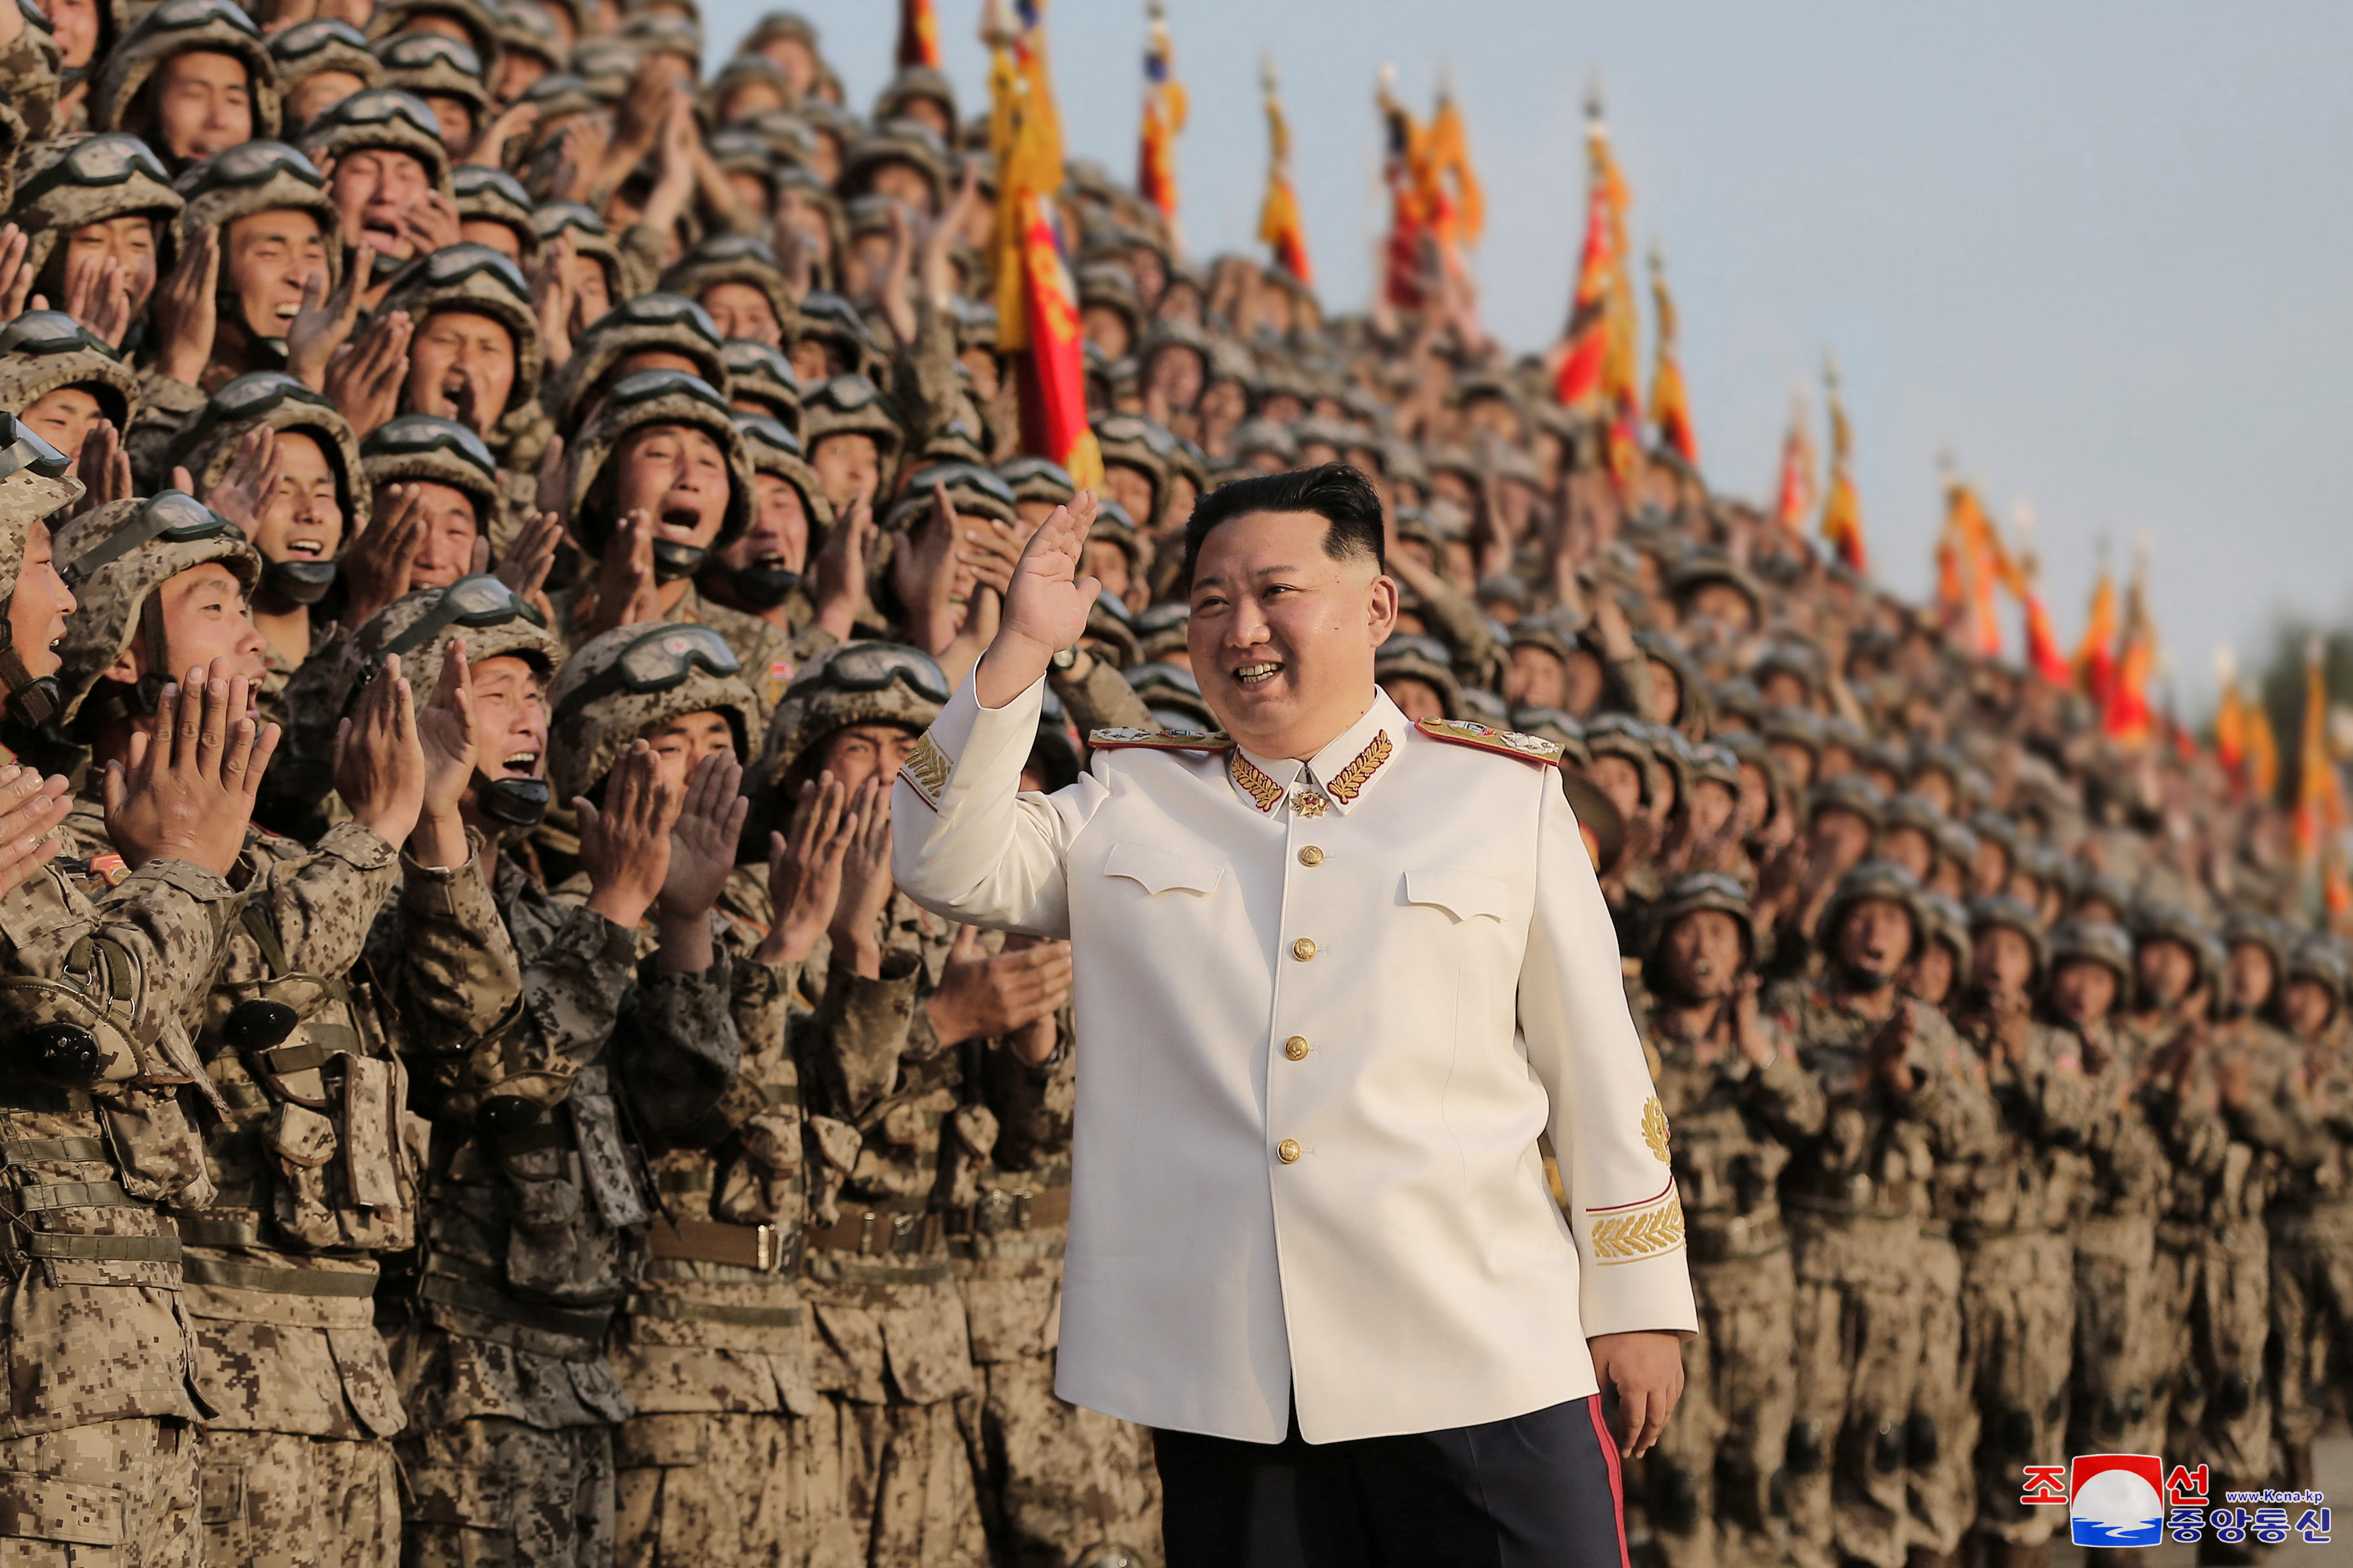 Foto de archivo del dictador norcoreano Kim Jong-un con soldados en un desfile militar para conmemorar el 90º aniversario de la fundación del Ejército Revolucionario Popular de Corea el 29 de abril de 2022 (KCNA vía REUTERS)